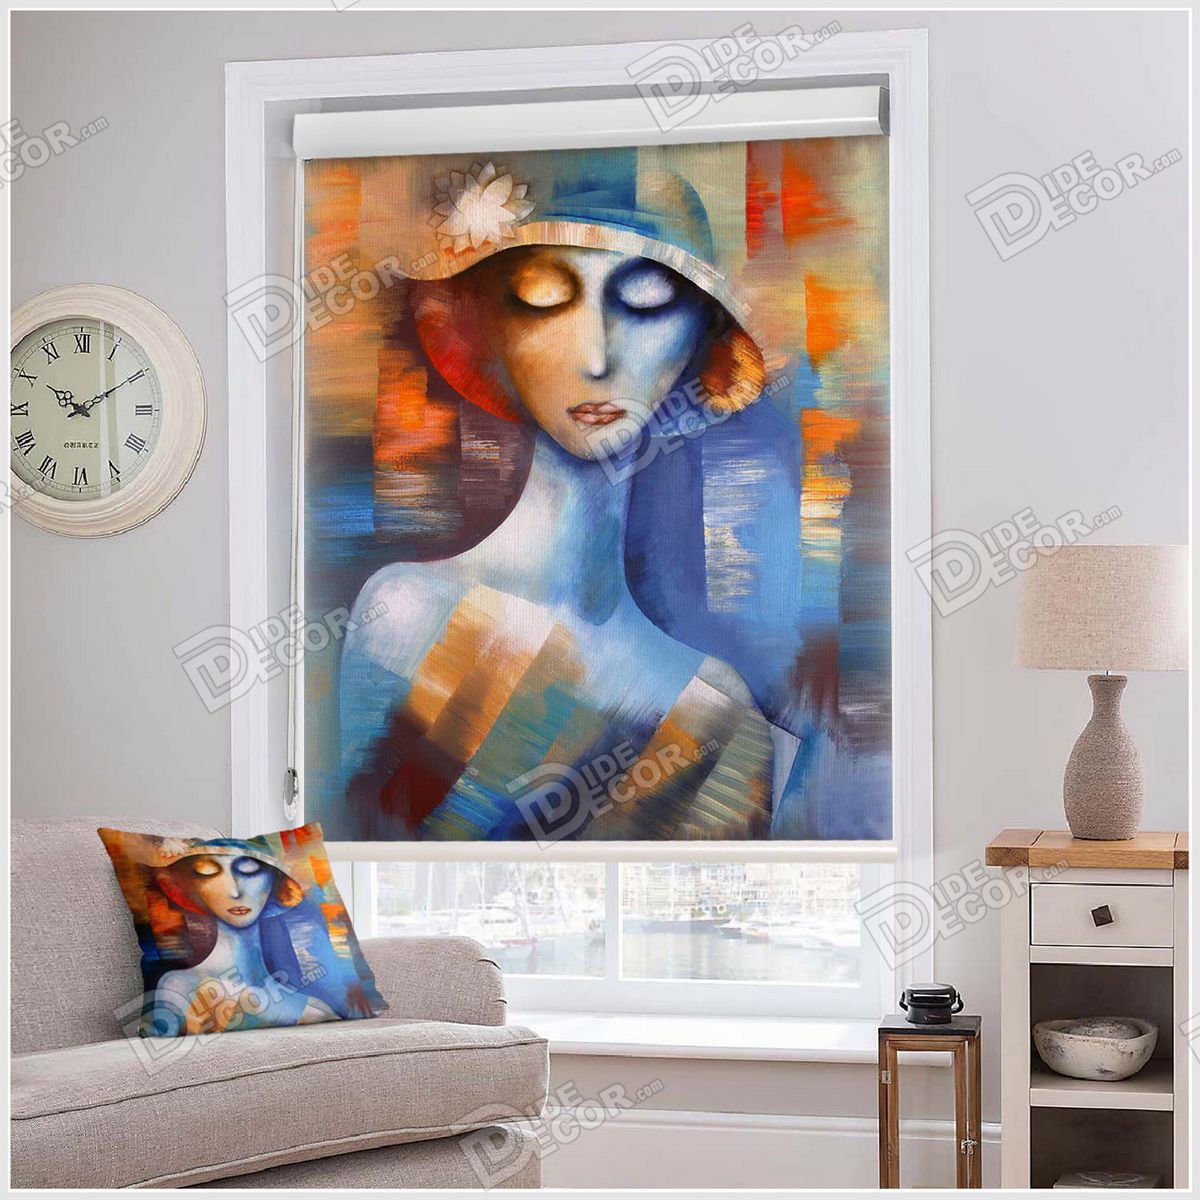 پرده شید نقاشی کد SSP-20 با طرحی دخترانه از یک زن کلاه به سر با گردن کشیده و بلند به رنگ های آبی و نارنجی است